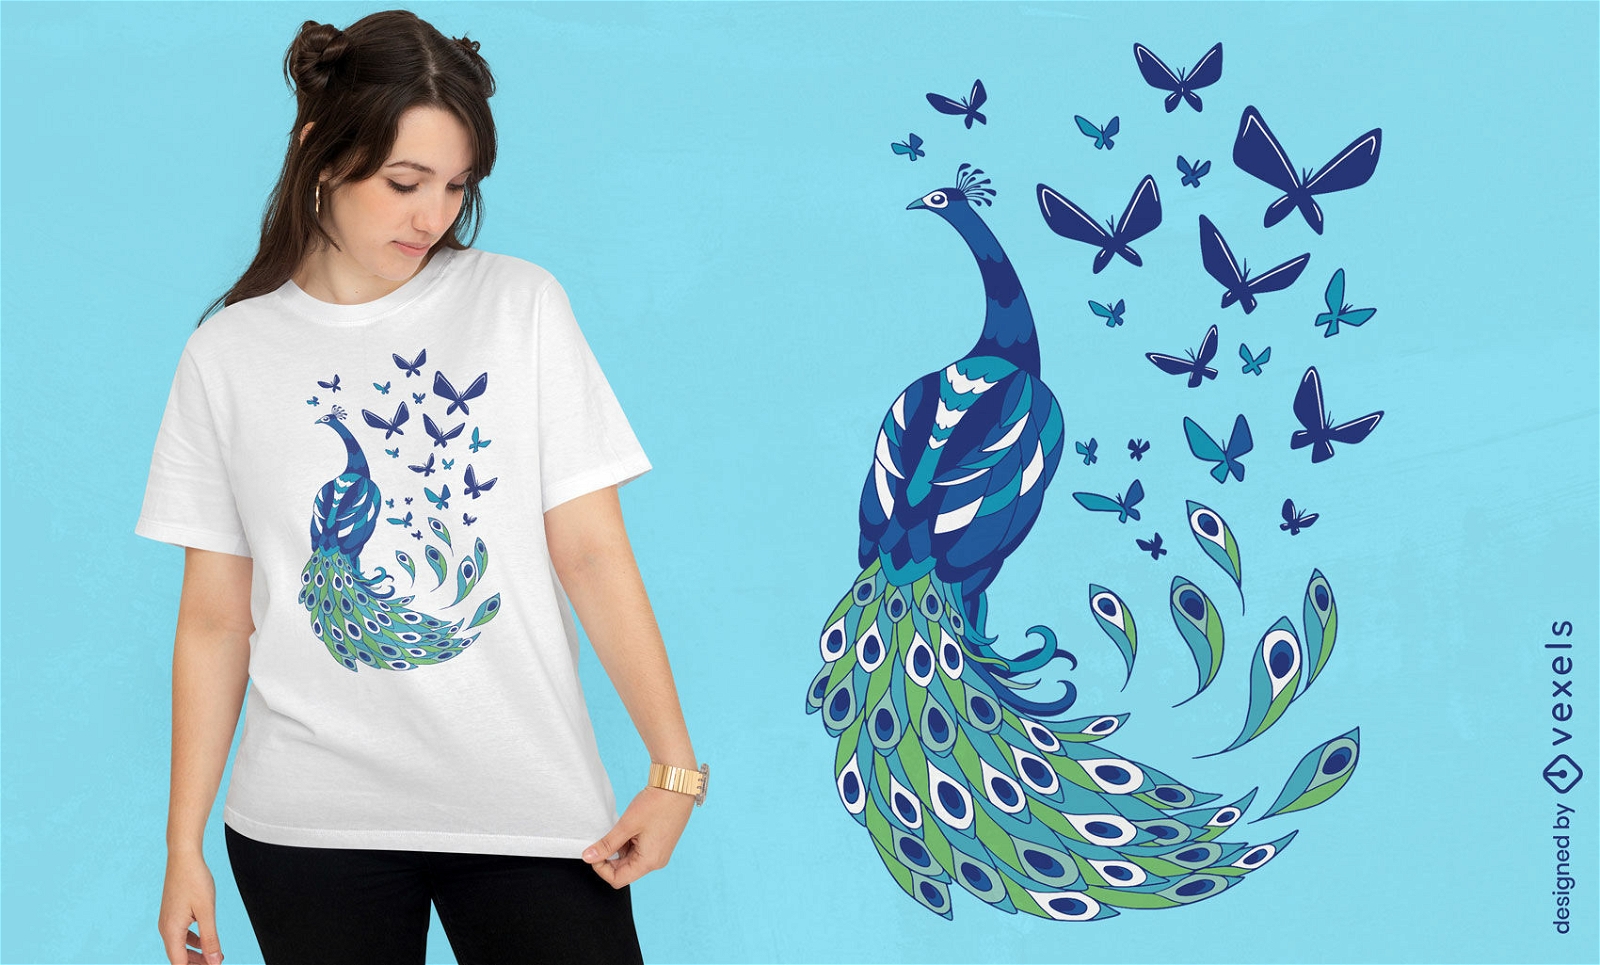 Diseño de camiseta de pavo real y mariposas.